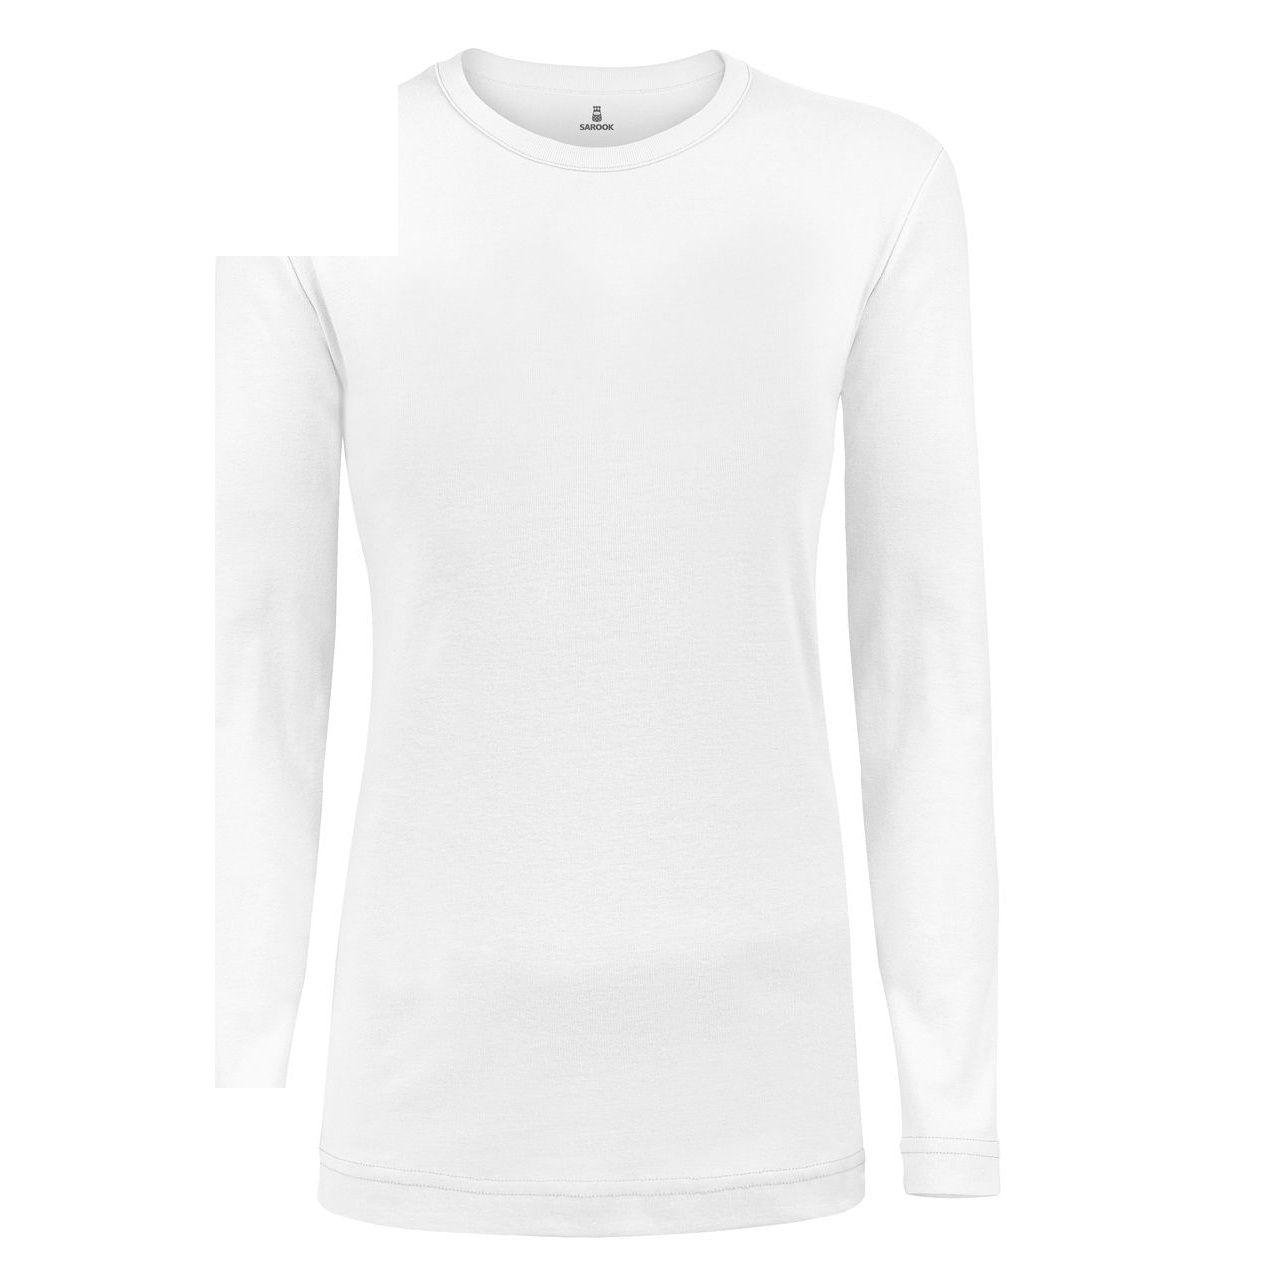 تی شرت آستین بلند زنانه ساروک مدل SZYUFR03 رنگ سفید -  - 3